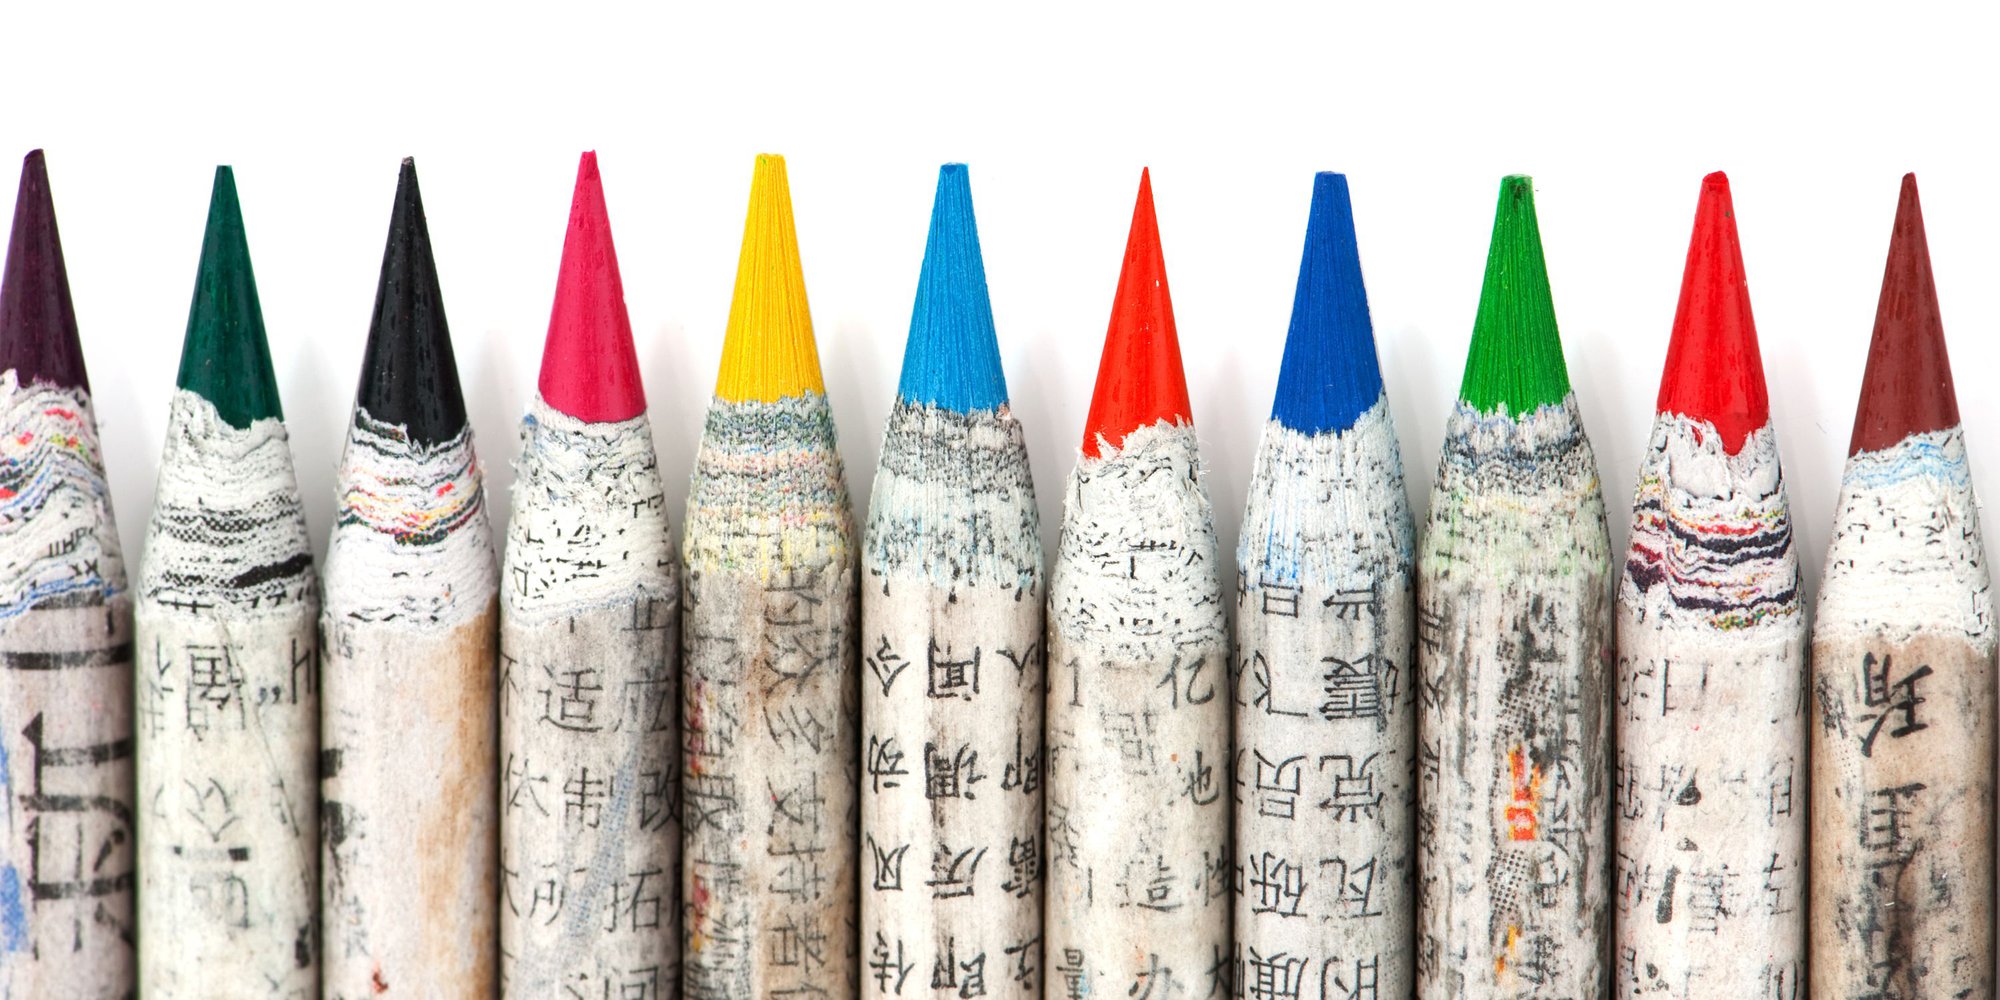 Kinesiska färgpennor i stående position